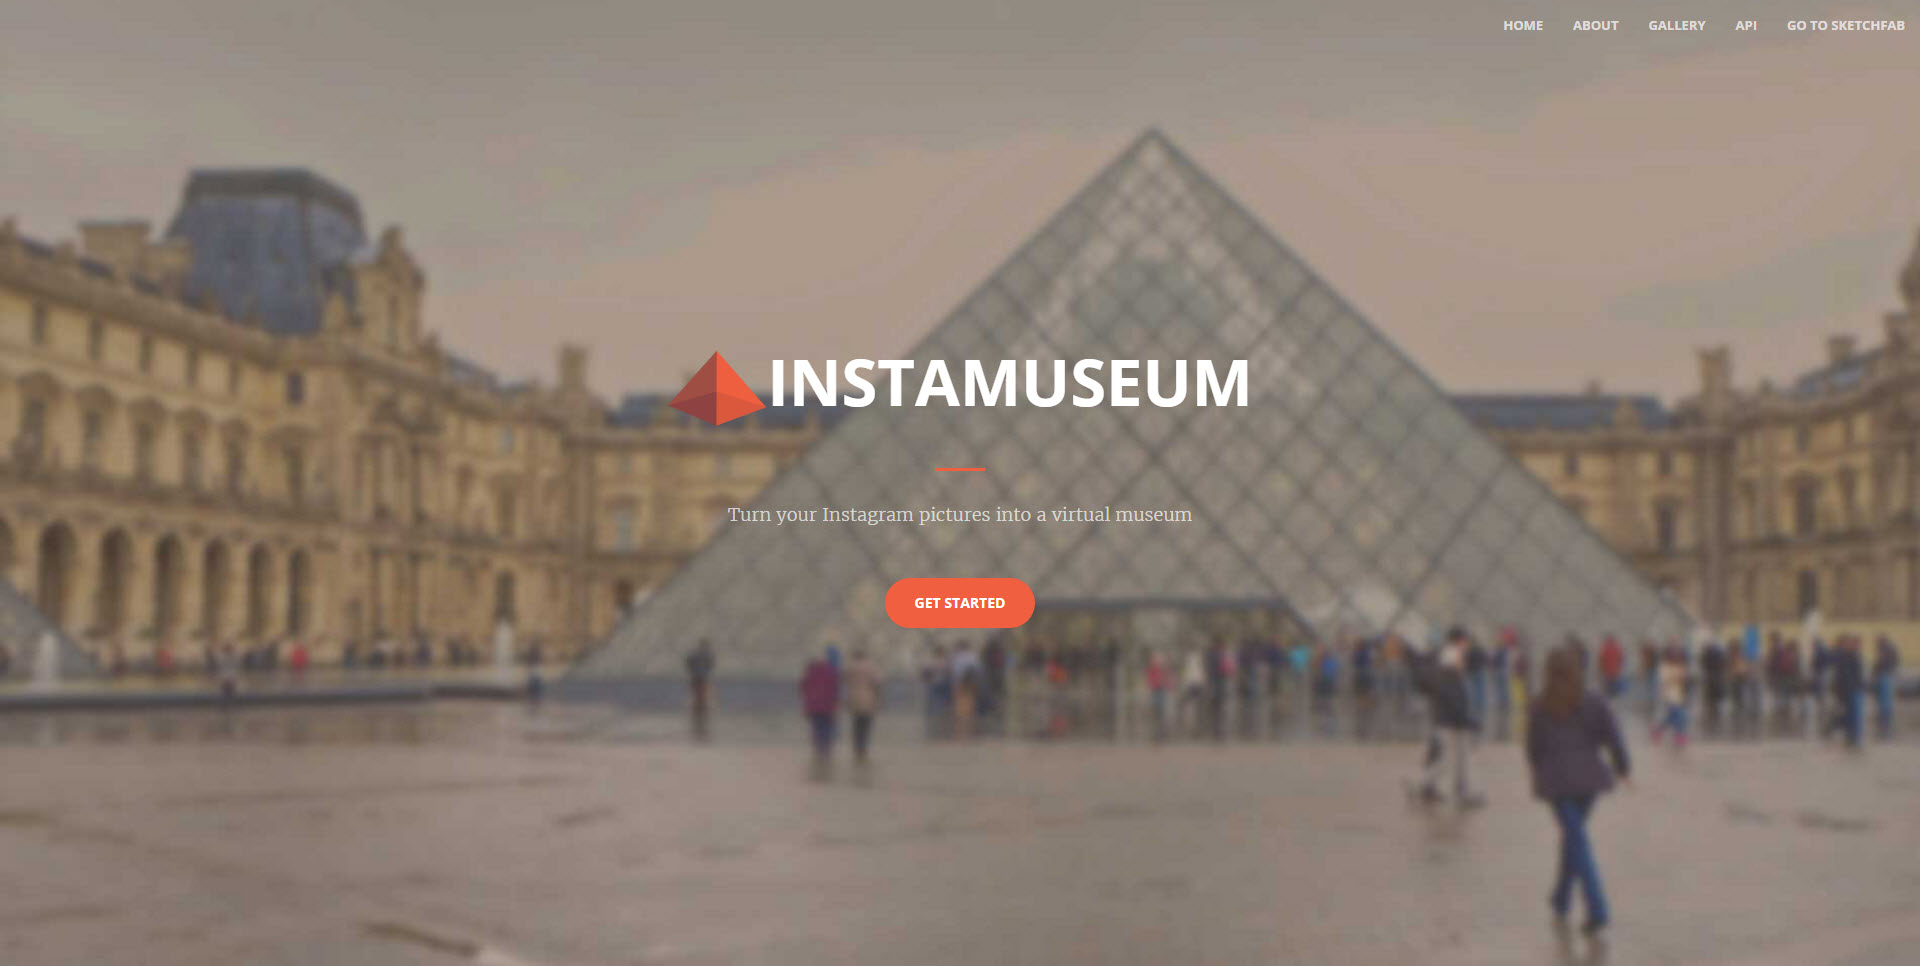 Instamuseum เว็บที่จะมาช่วยเปลี่ยนคลังภาพ IG ของเราให้เป็นพิพิธภัณฑ์แสดงภาพ